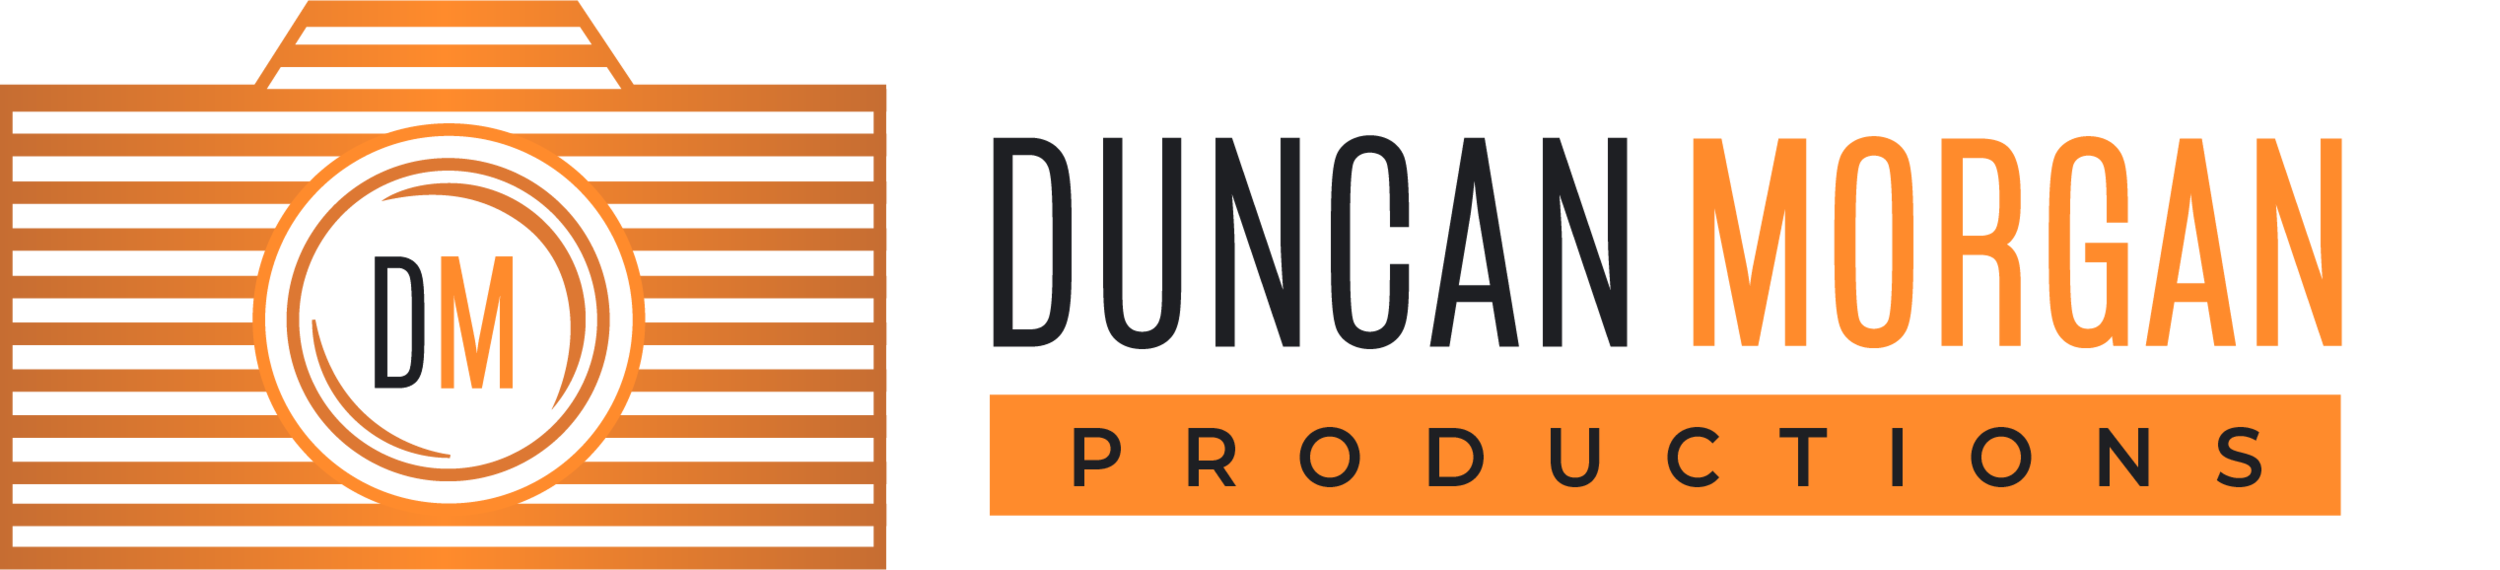 Duncan Morgan Productions